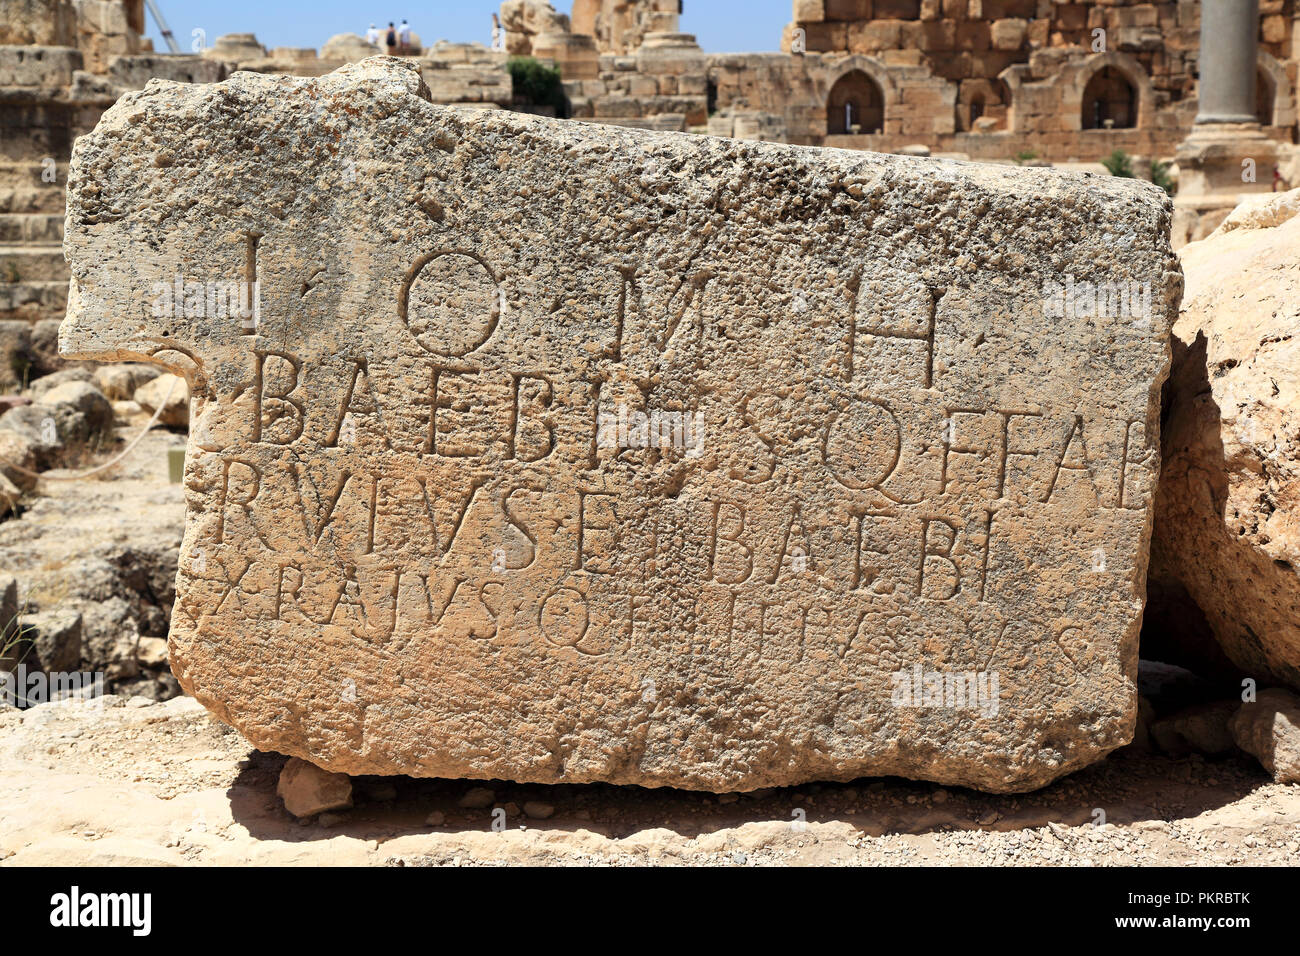 L'écriture romaine gravées dans la pierre à Baalbek ruines, Liban Banque D'Images